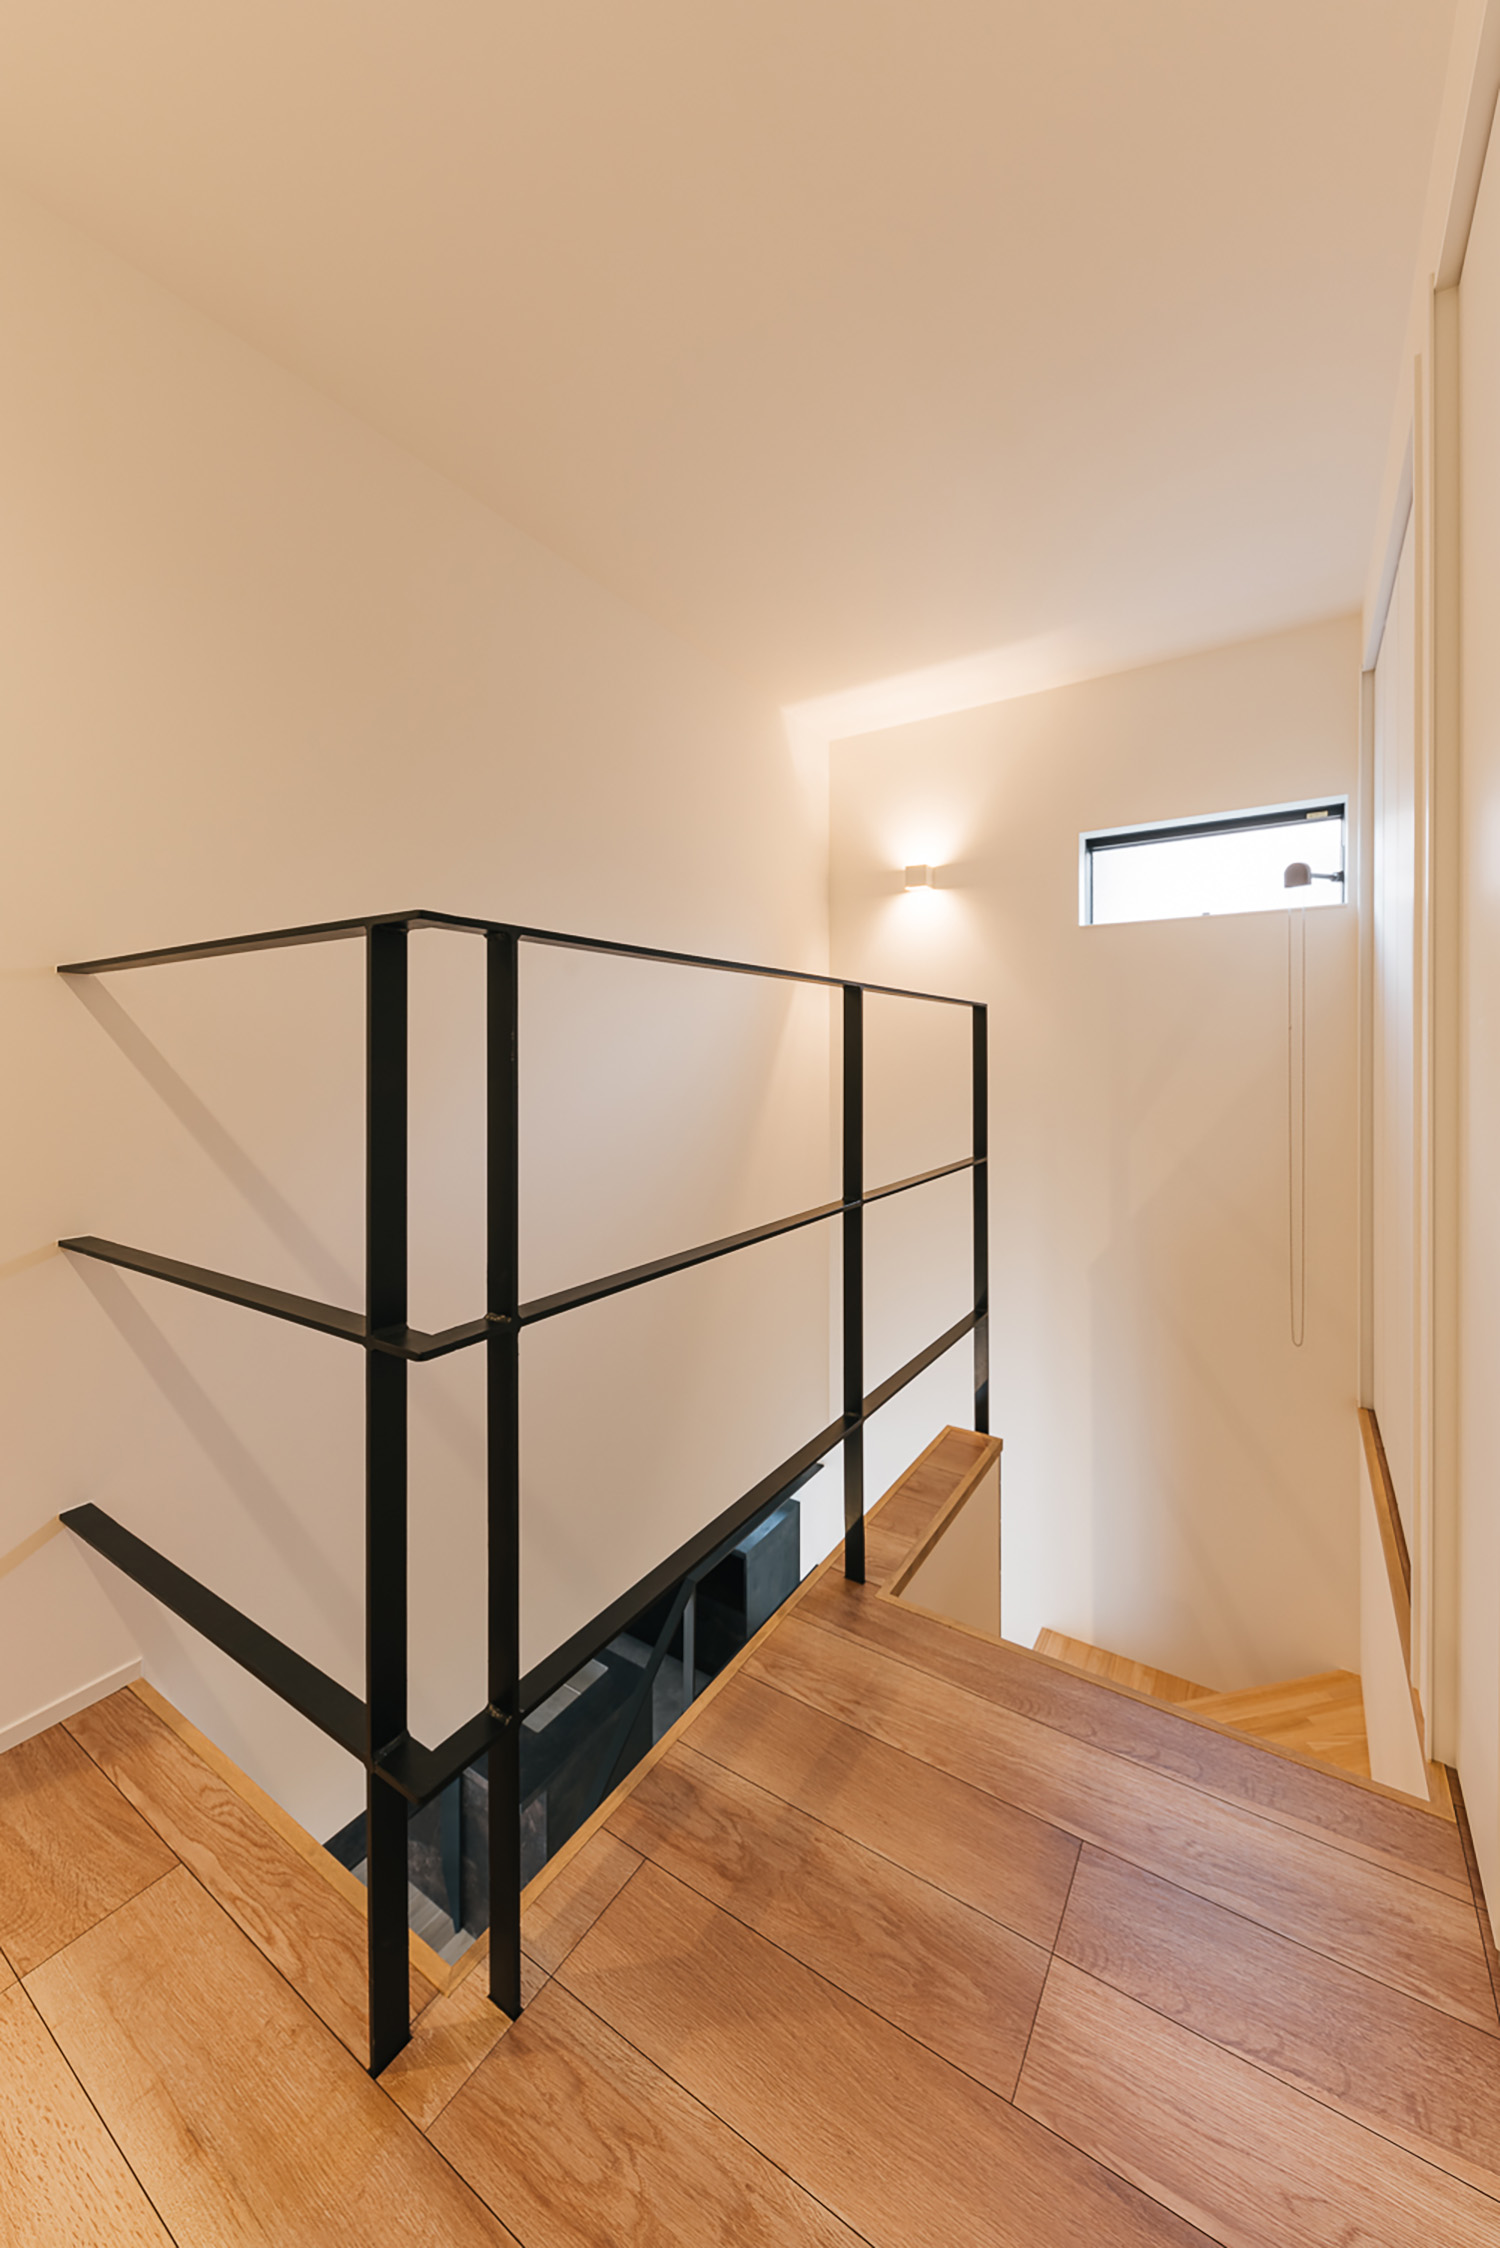 注文住宅・階段・木製のスケルトン階段・アイアンの手すり・スリット窓